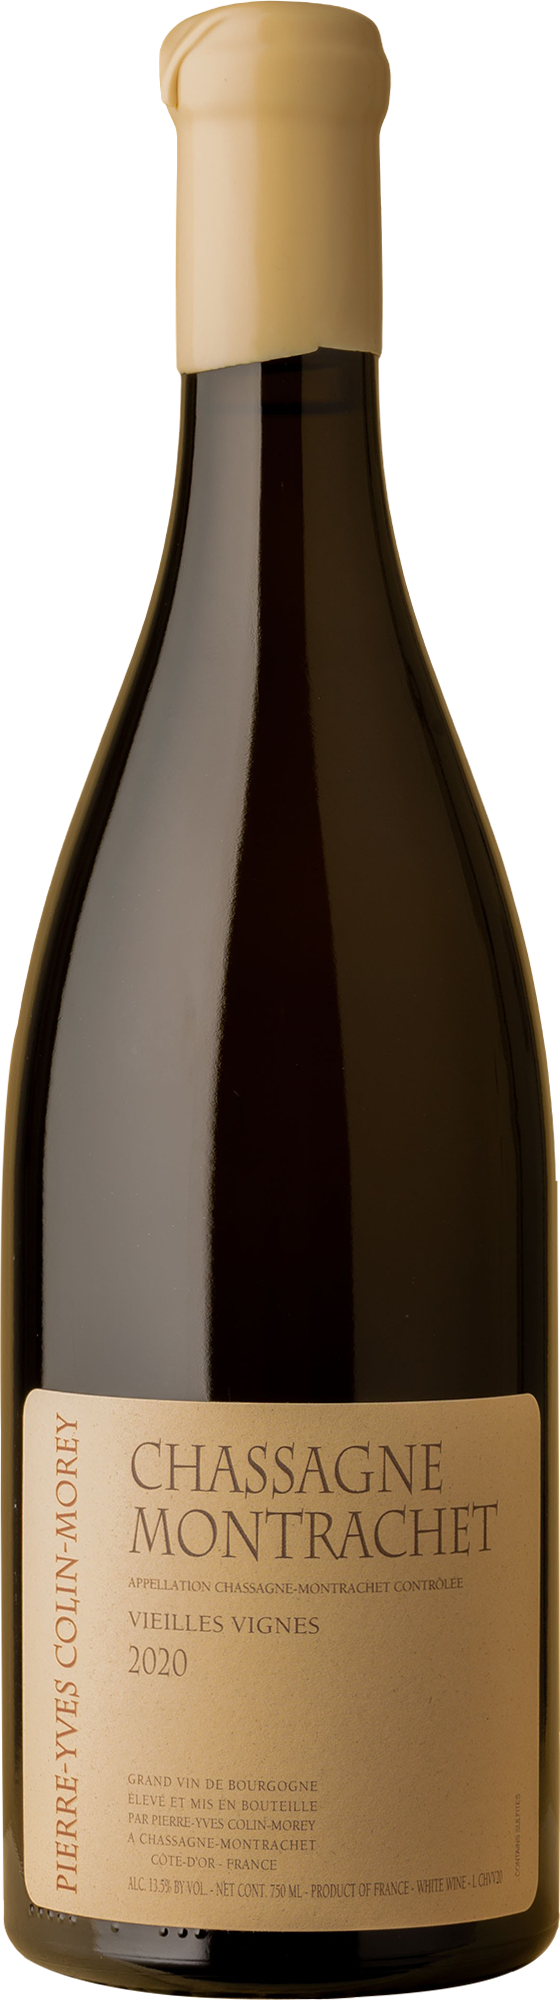 Pierre-Yves Colin-Morey - Chassagne Montrachet Vieilles Vignes Chardonnay 2020 White Wine